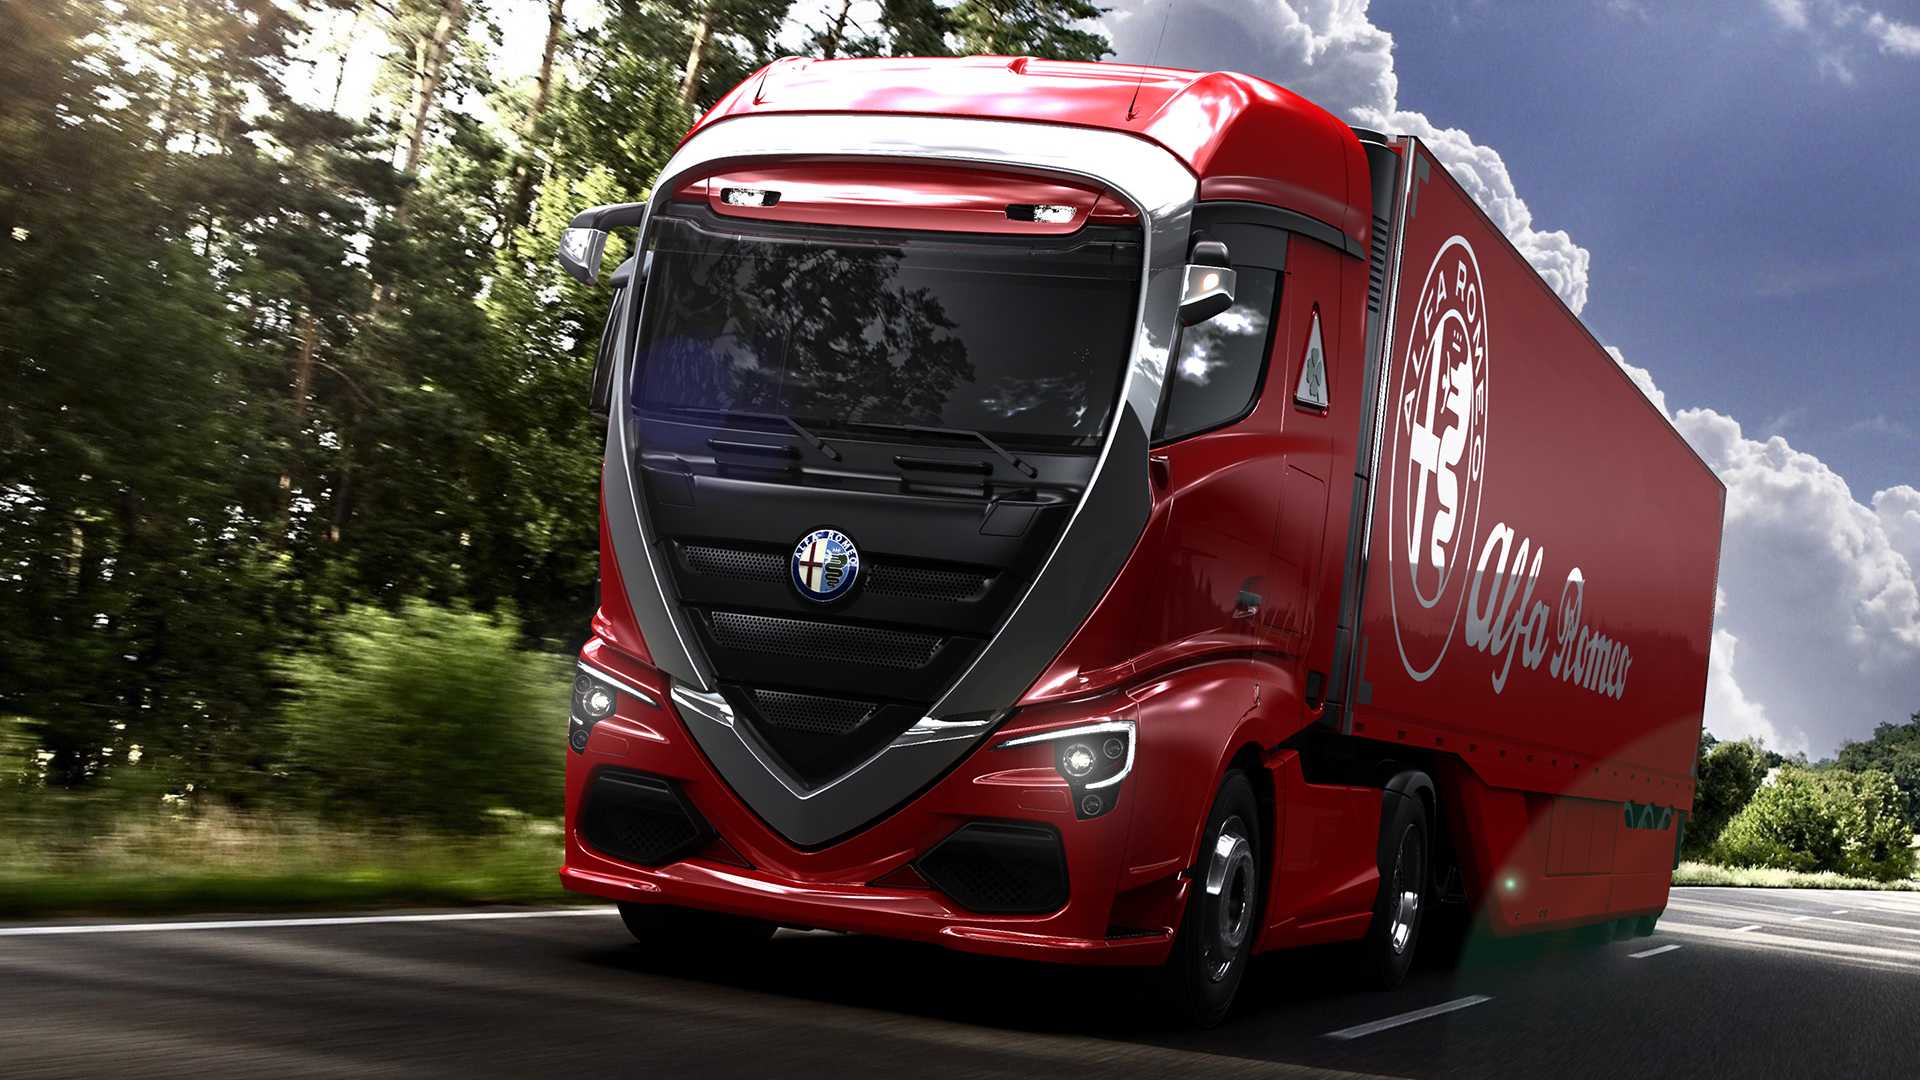 کامیون احتمالی آلفا رومئو/ زیبای بخش خودروهای تجاری